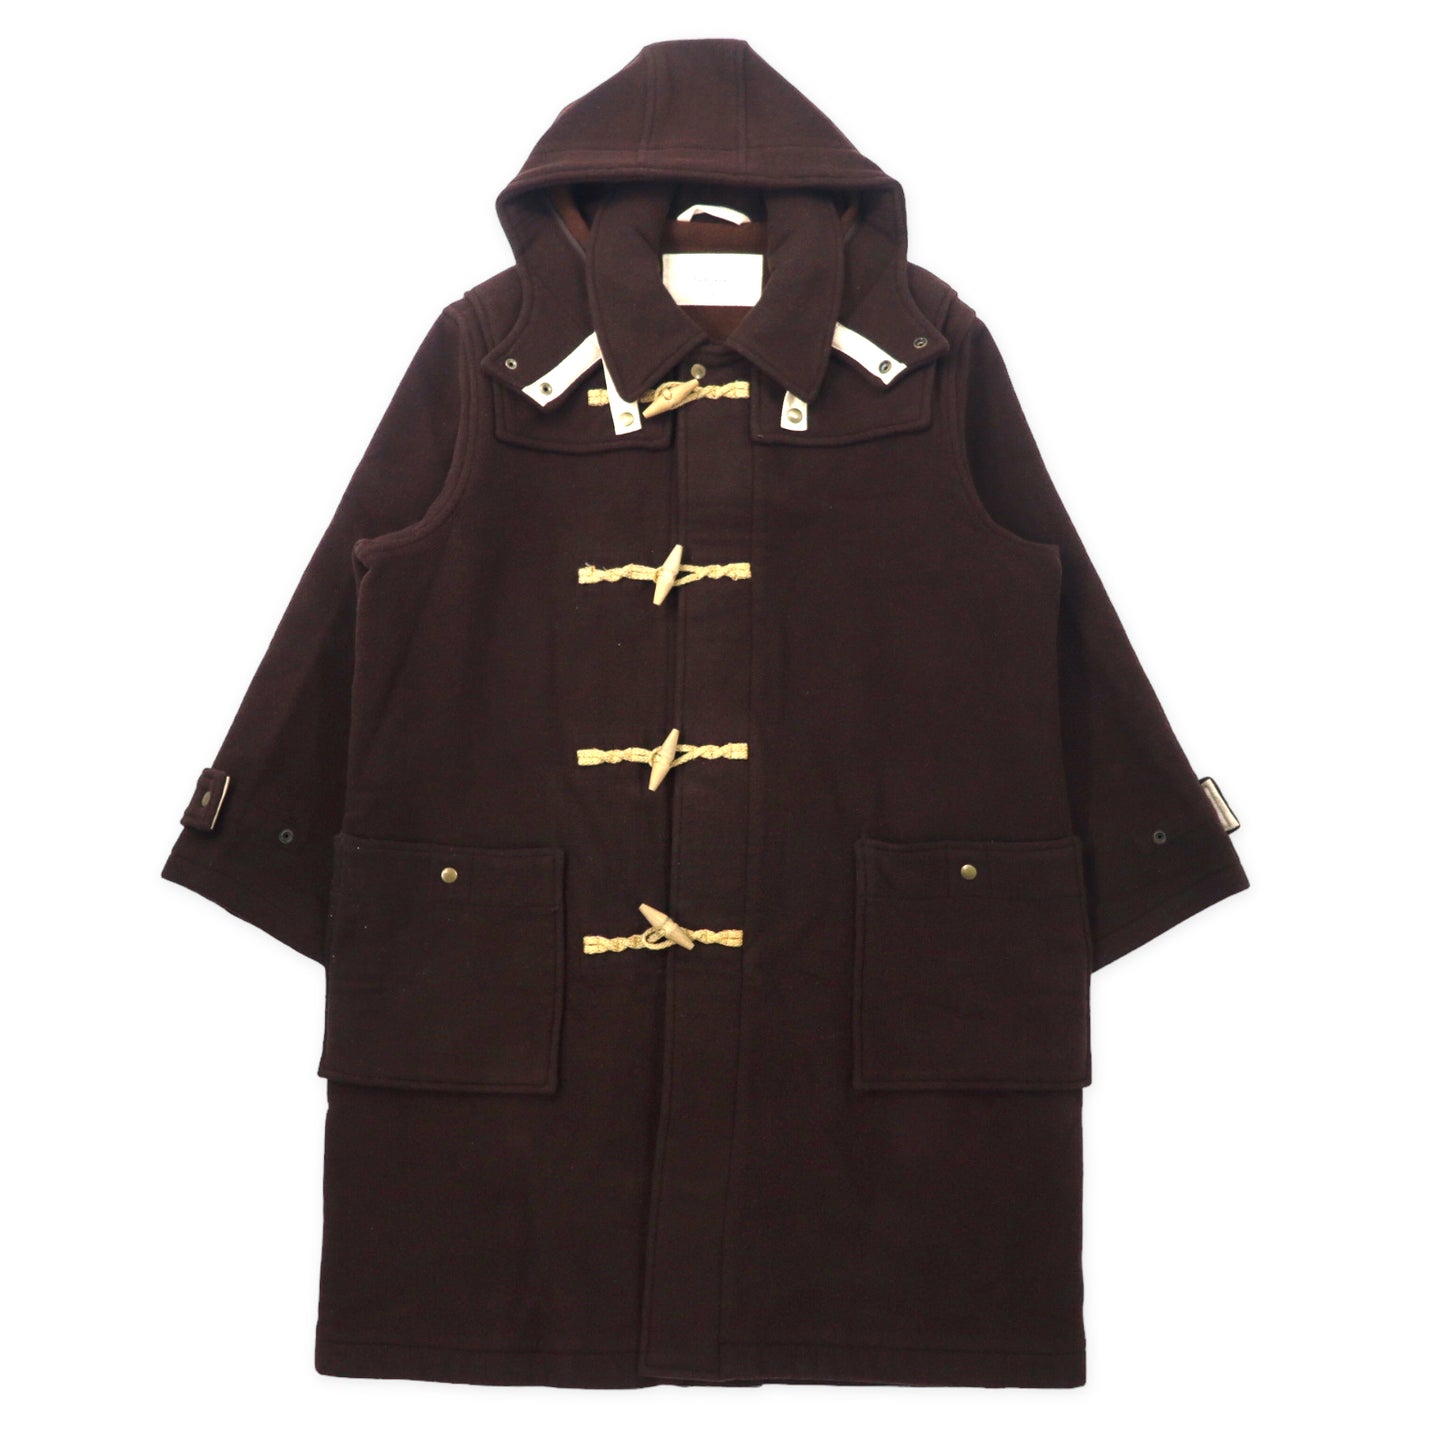 Paul Smith 90's COAT L Brown Wool Hoodie Detachable Japan Made